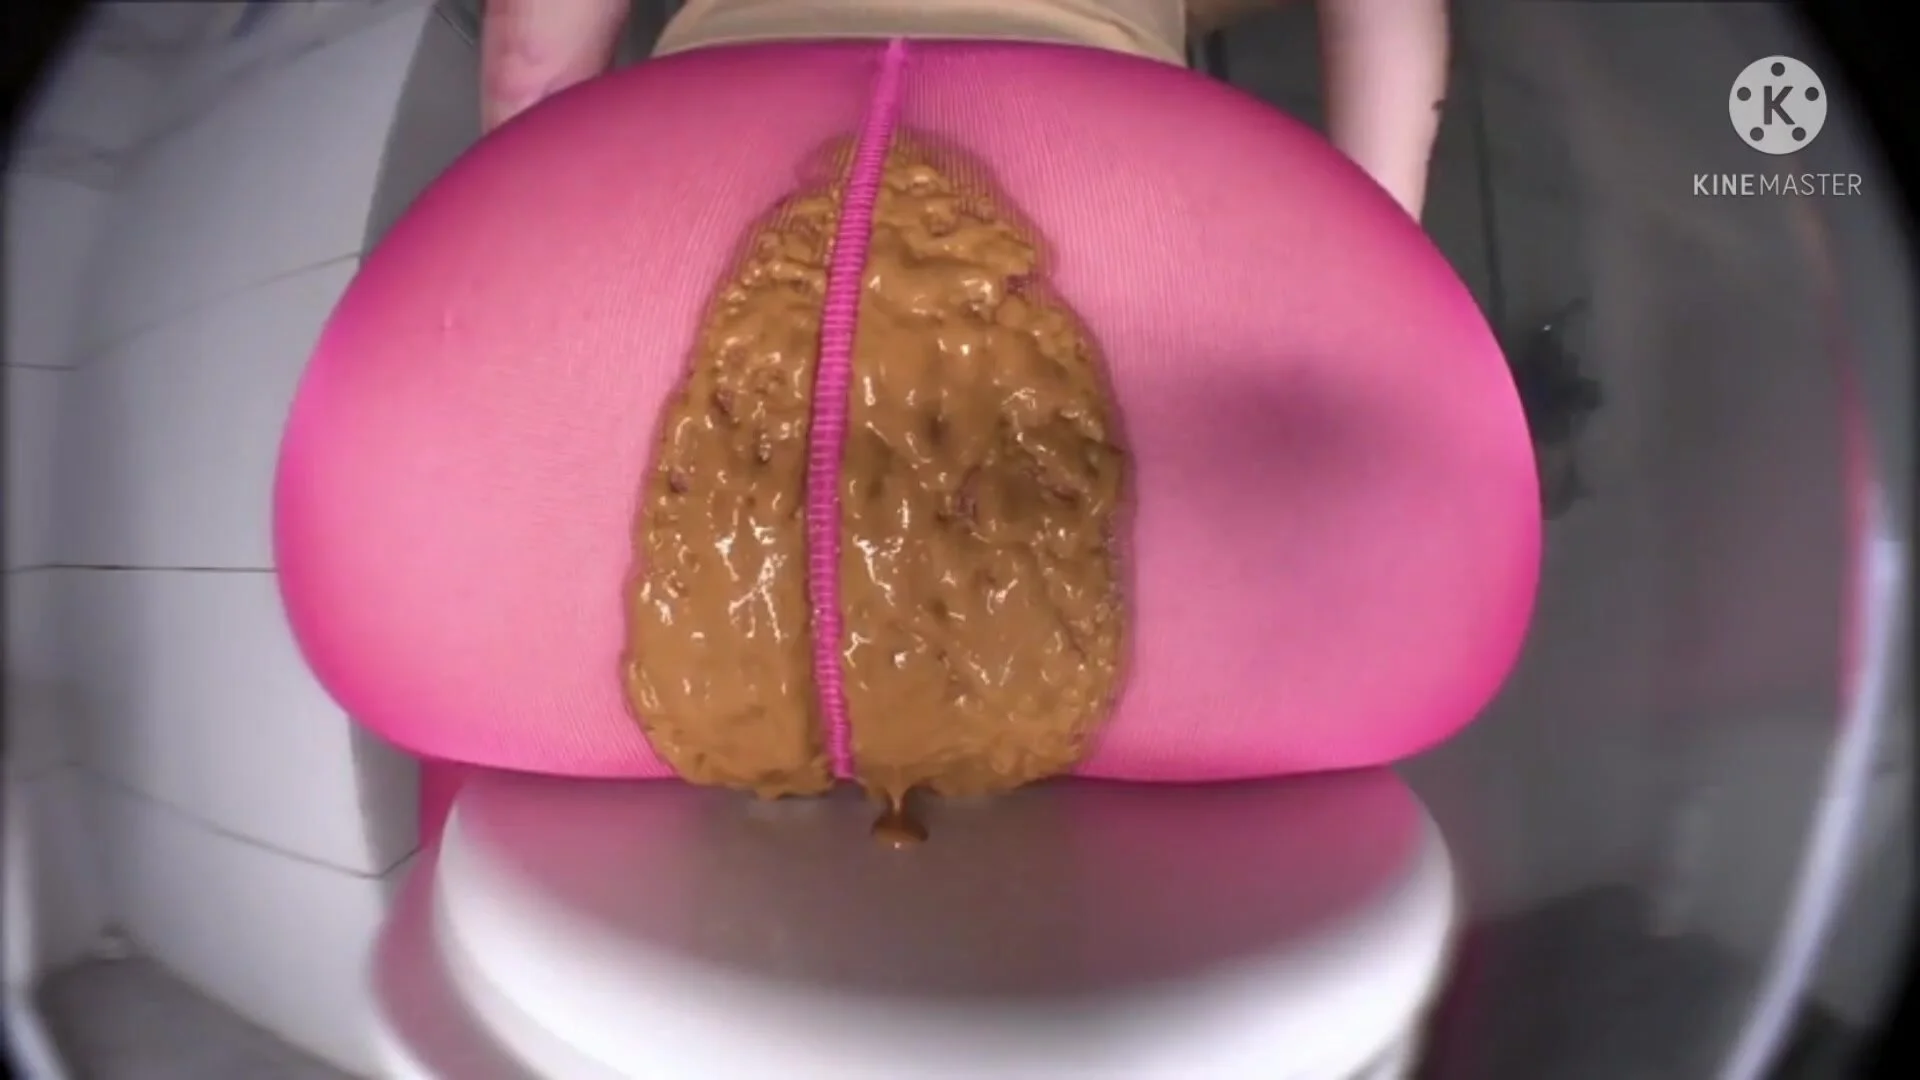 Huge ass girl has diarrhea in her pink leggings - ThisVid.com на русском